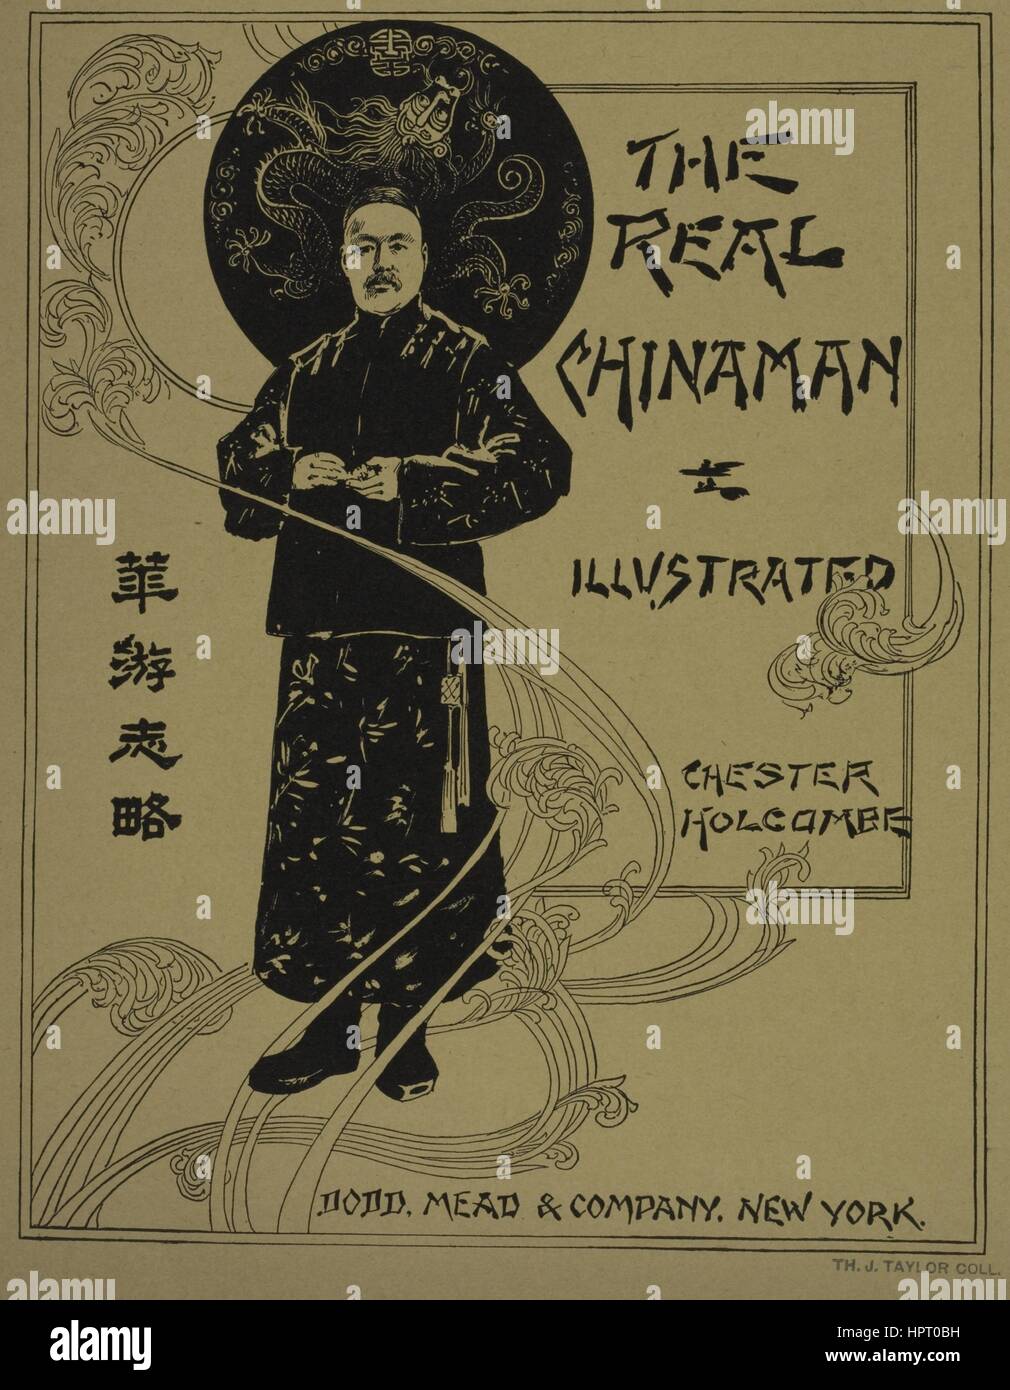 Un poster pubblicitari il romanzo "La vera Chinamen' da Chester Holcombe, 1903. Dalla Biblioteca Pubblica di New York. Foto Stock